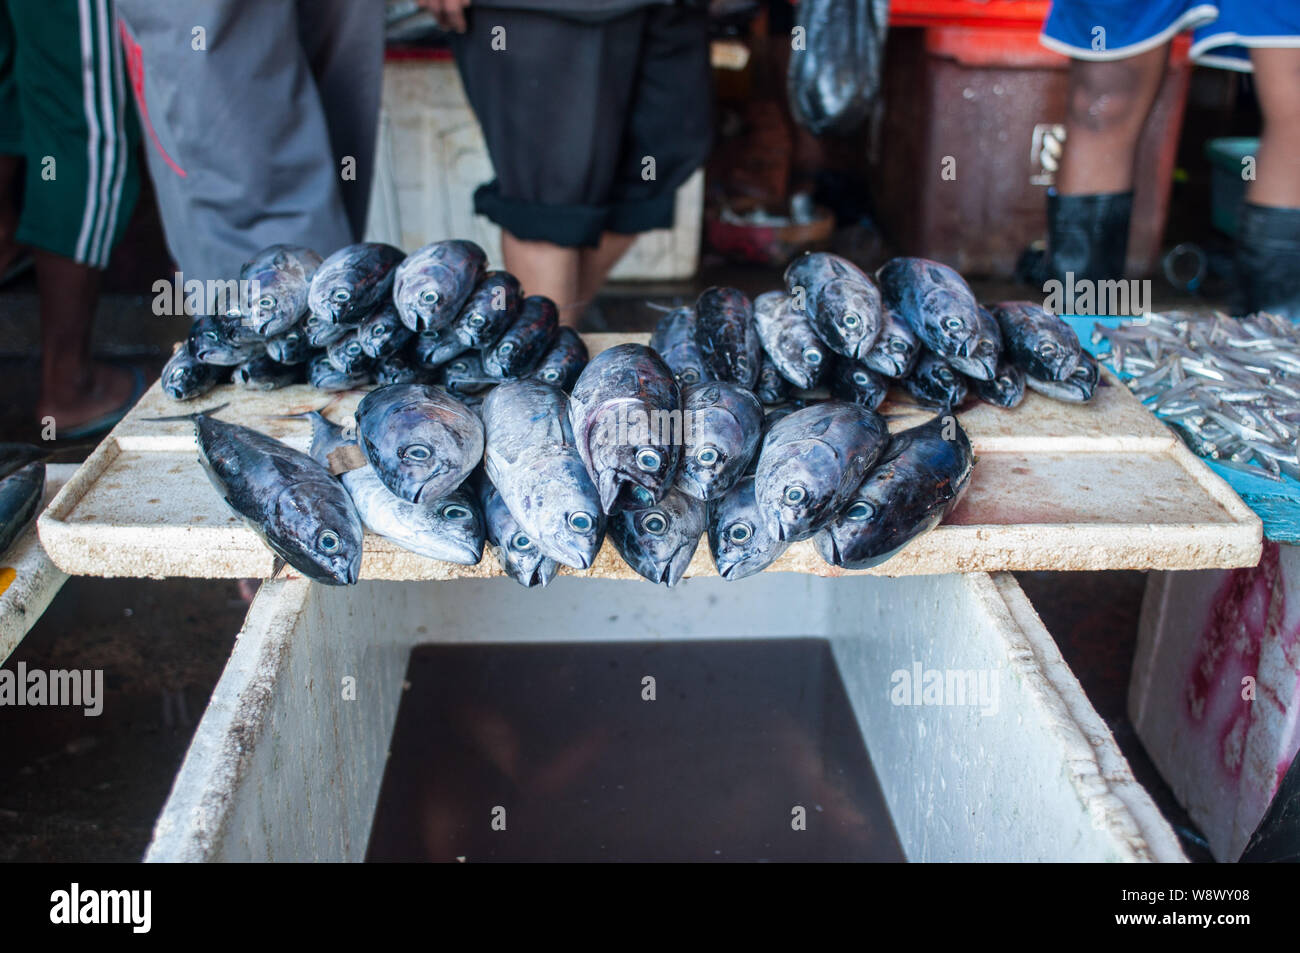 Makrele Fische sind auf dem kalten Feld Paotere Fischmarkt in Makassar angezeigt. Indonesien hat eine der größten Fisch Produkt geworden, nachdem die Centr Stockfoto